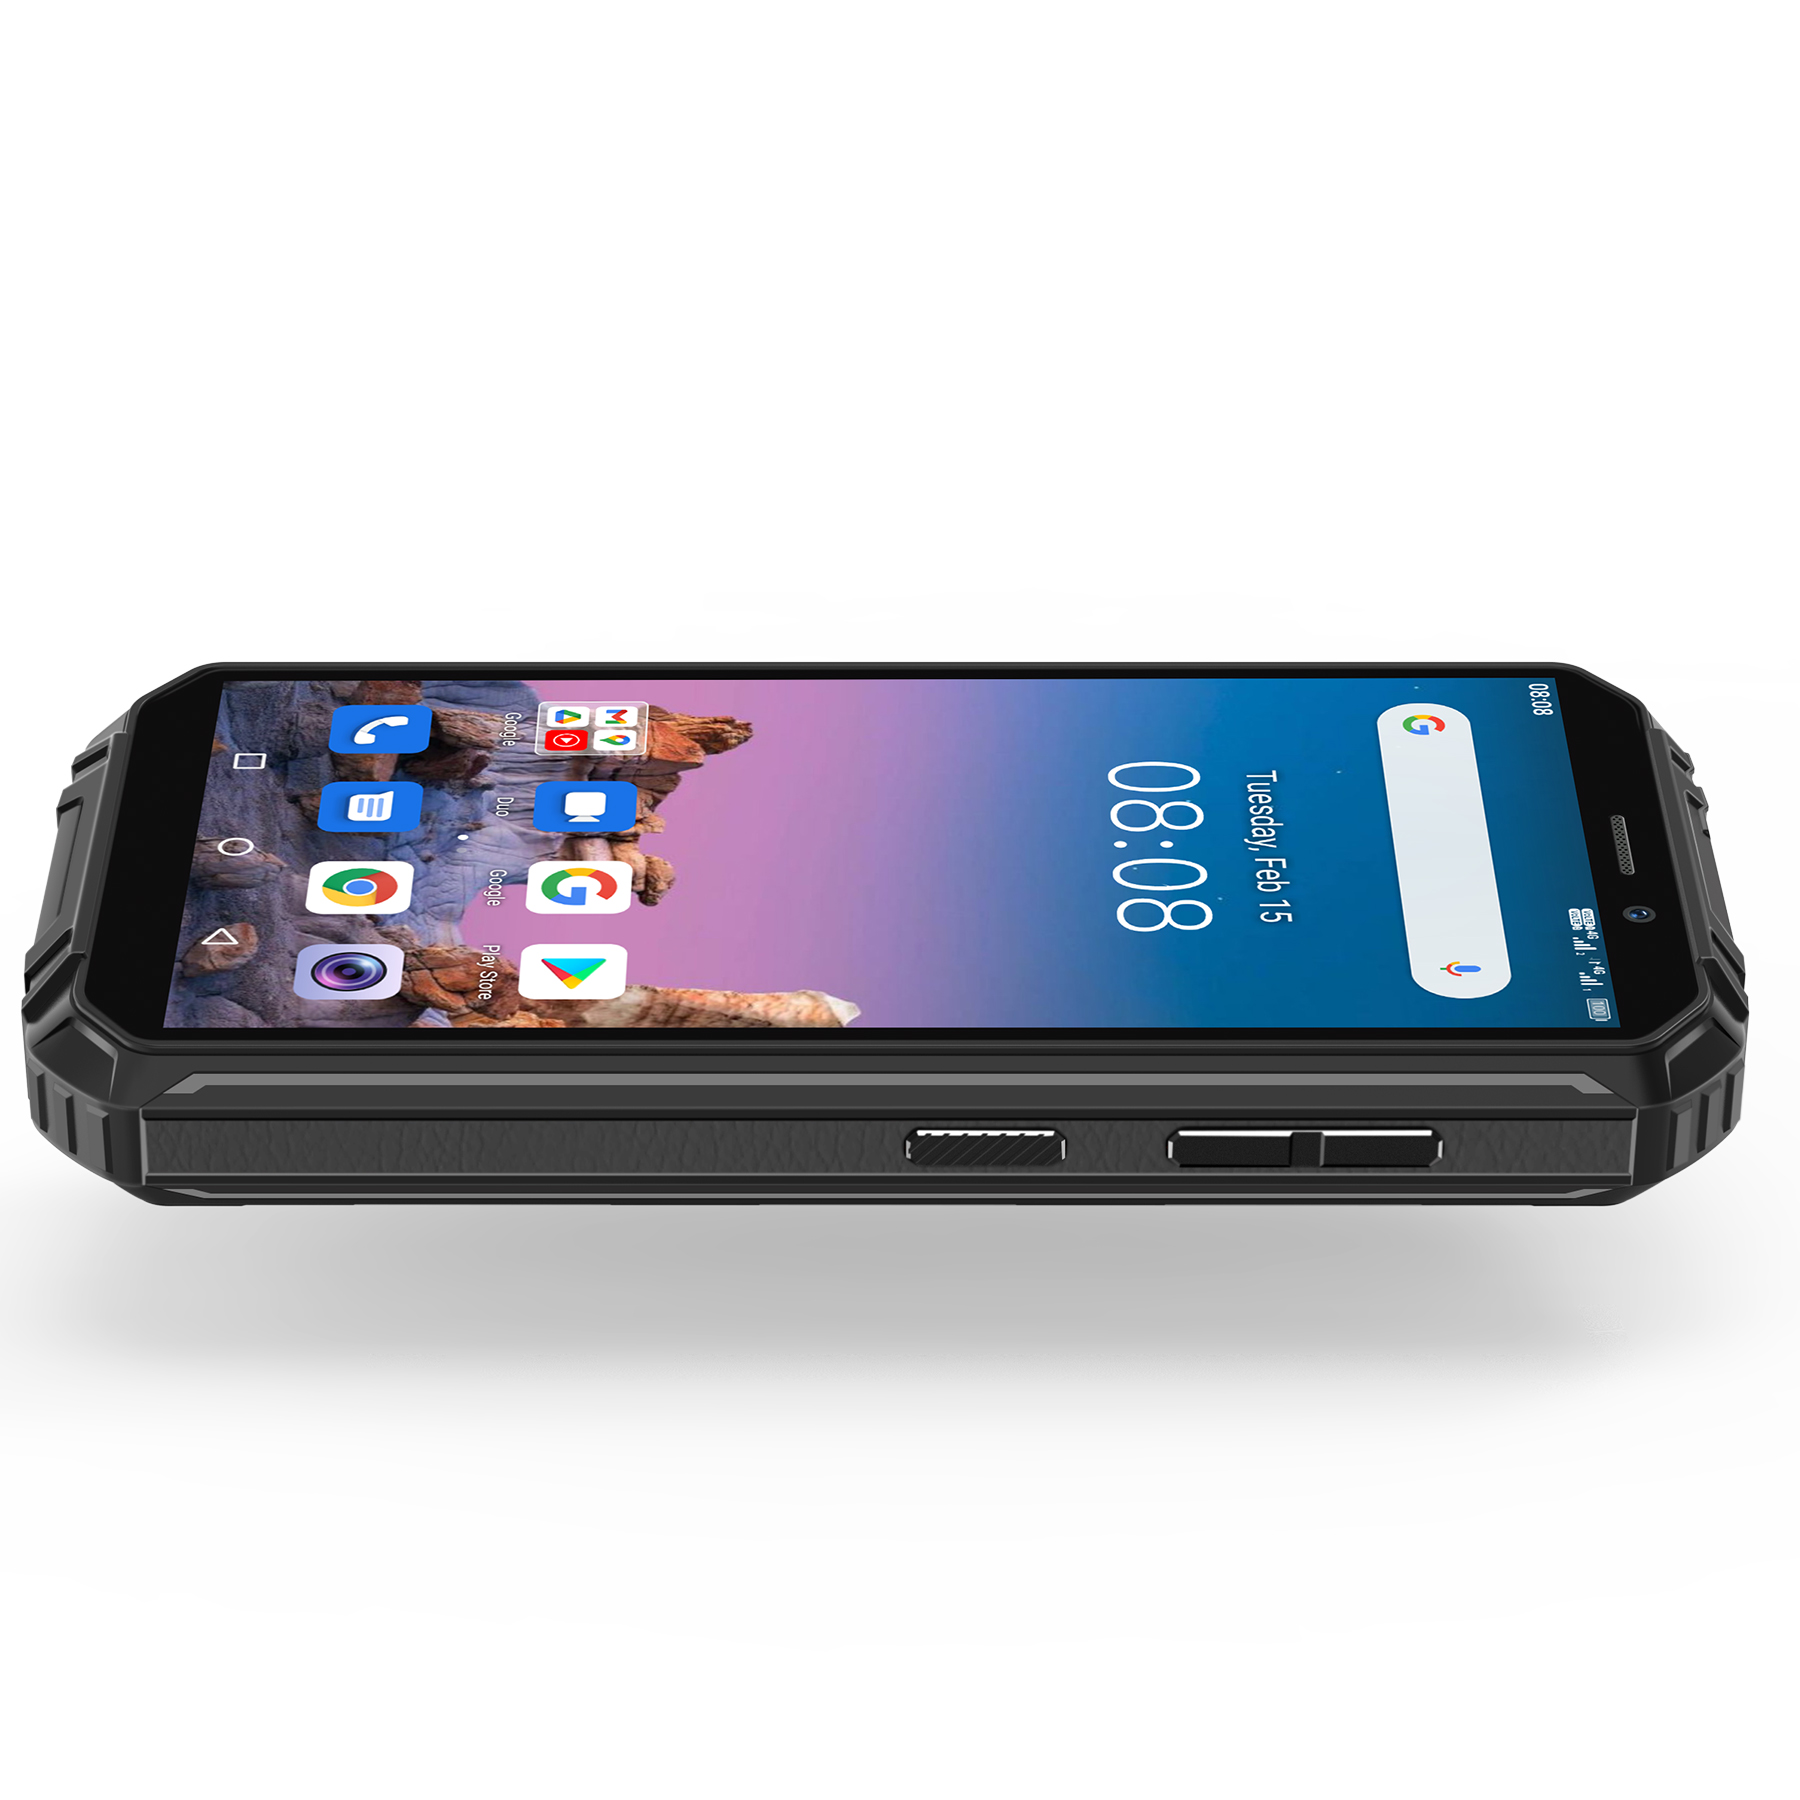 Điện thoại OUKITEL WP18 (Chống nước ,chống va đập, pin khủng 12500mAh, Ram 4GB ,Rom 32GB ,màn hình 5.93 inch,Điện thoại chắc chắn) – HÀNG CHÍNH HÃNG